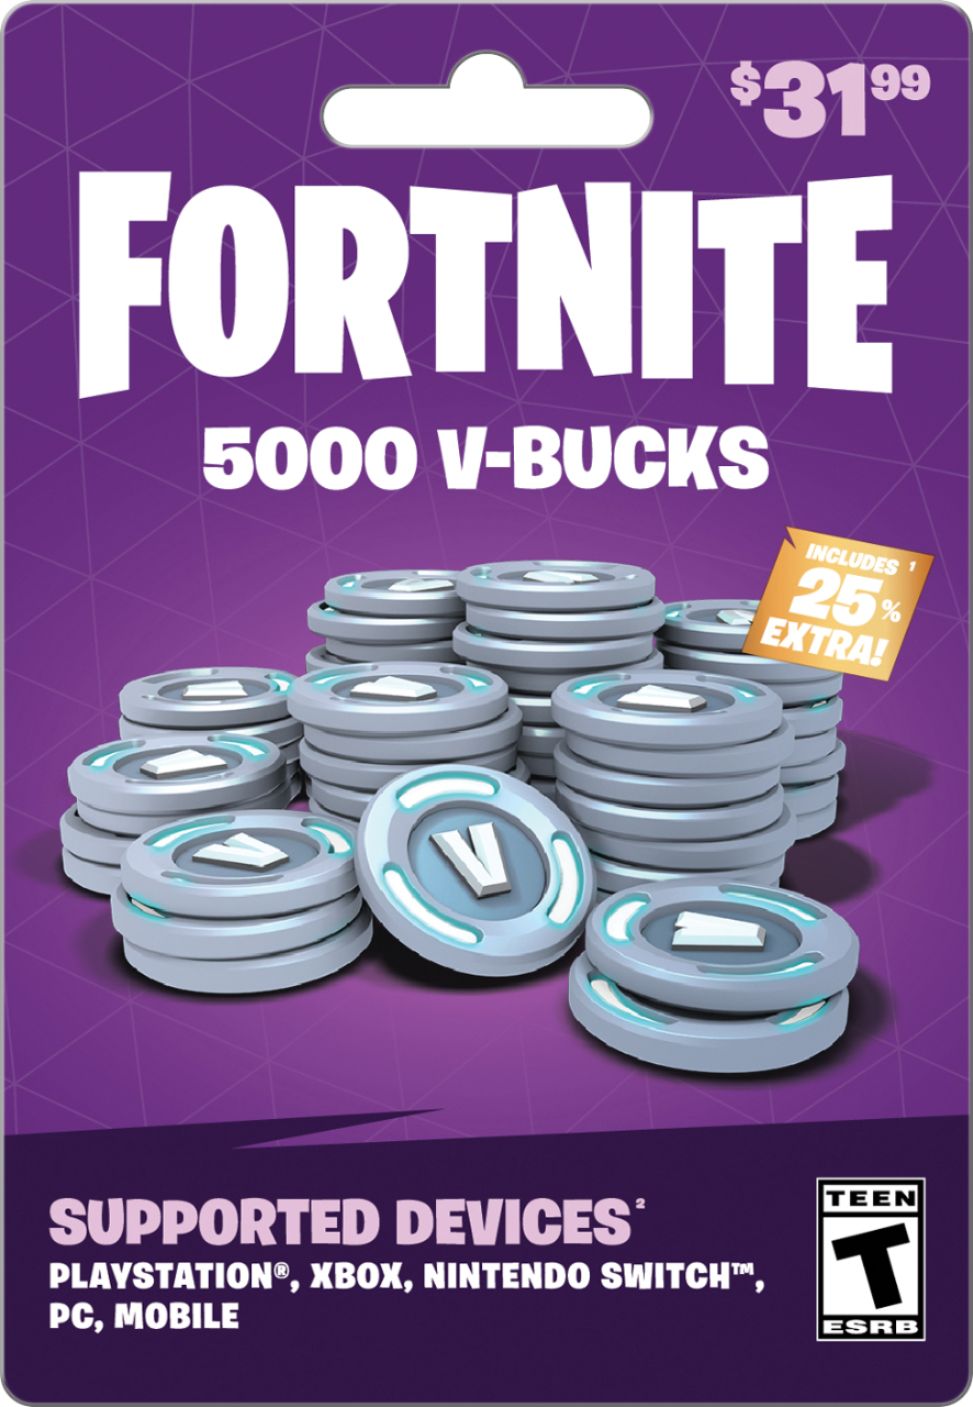 Fortnite V-Bucks 31.99 Card